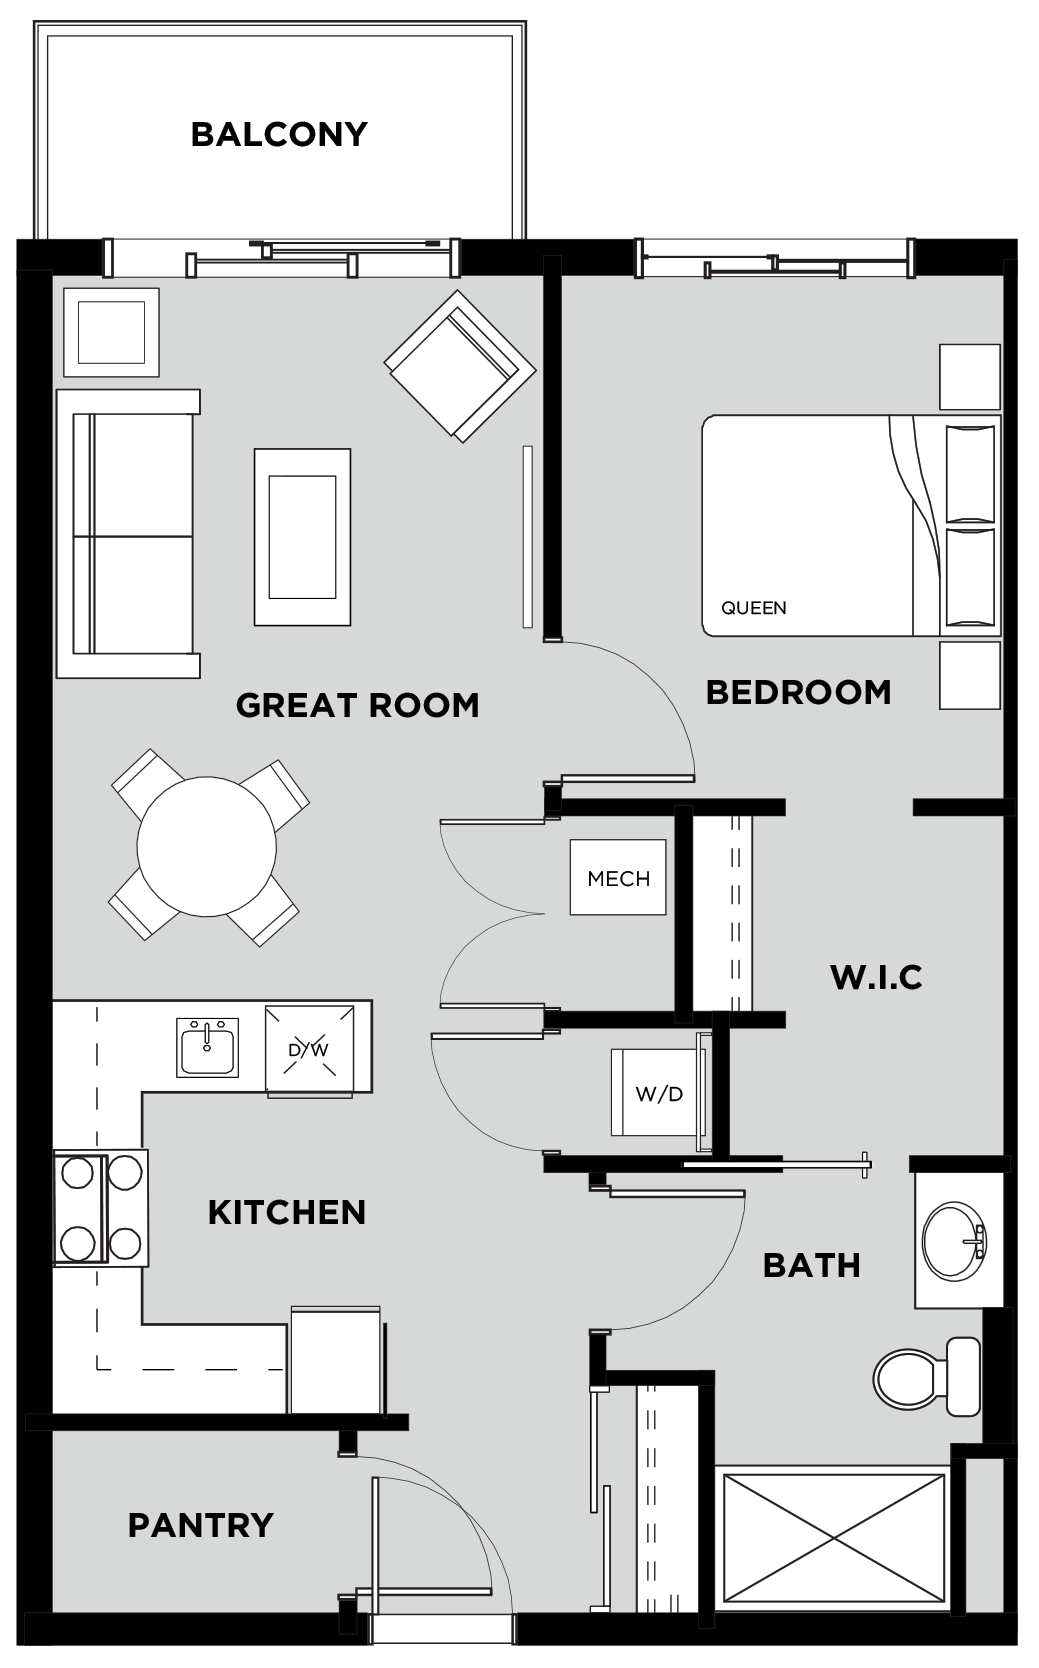 Telford Mews Suite 318 Floor Plan